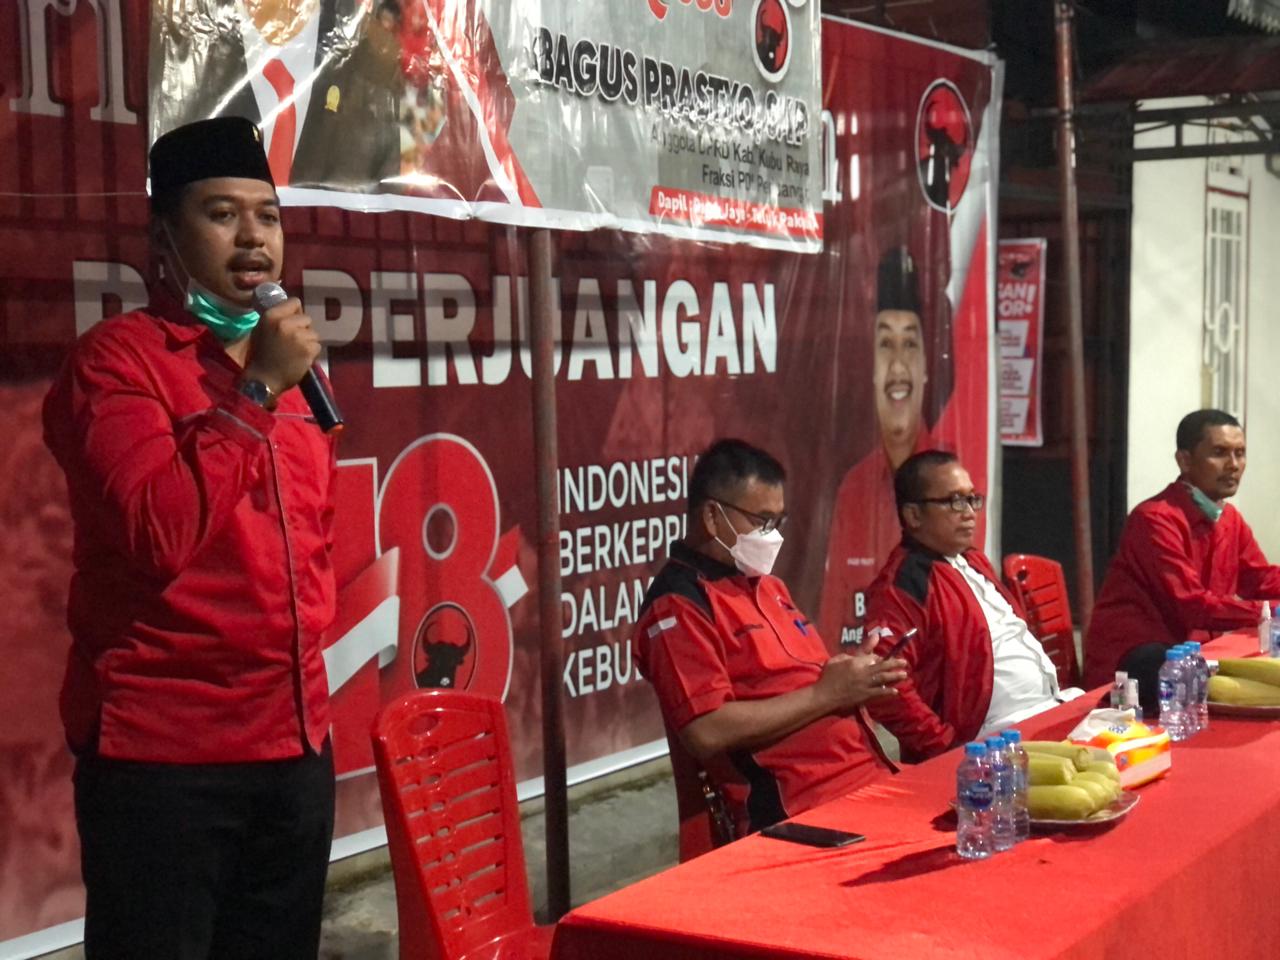 Anggota DPRD Kubu Raya dari fraksi PDI Perjuangan Bagus Prastyo menerima sejumlah aspirasi dari warga saat melaksanakan reses di daerah pemilihannya